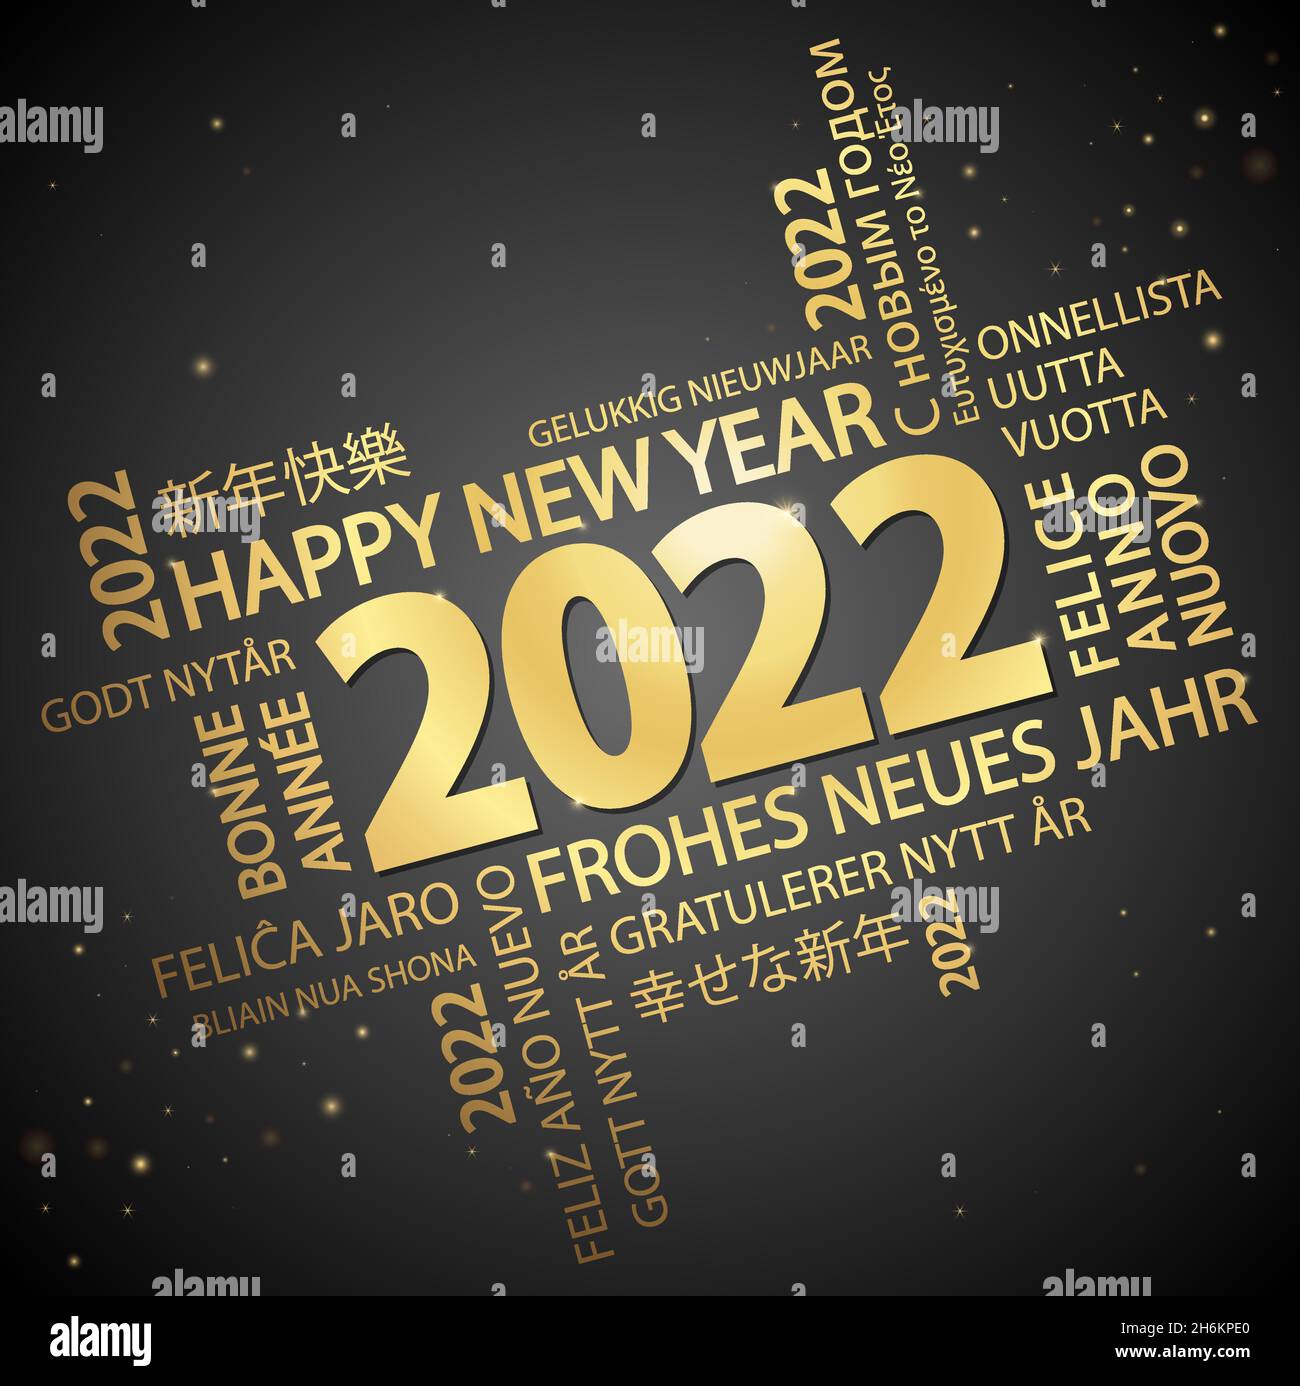 fichier vectoriel eps avec nuage de mots avec message de bienvenue du nouvel an 2022 et fond noir Illustration de Vecteur